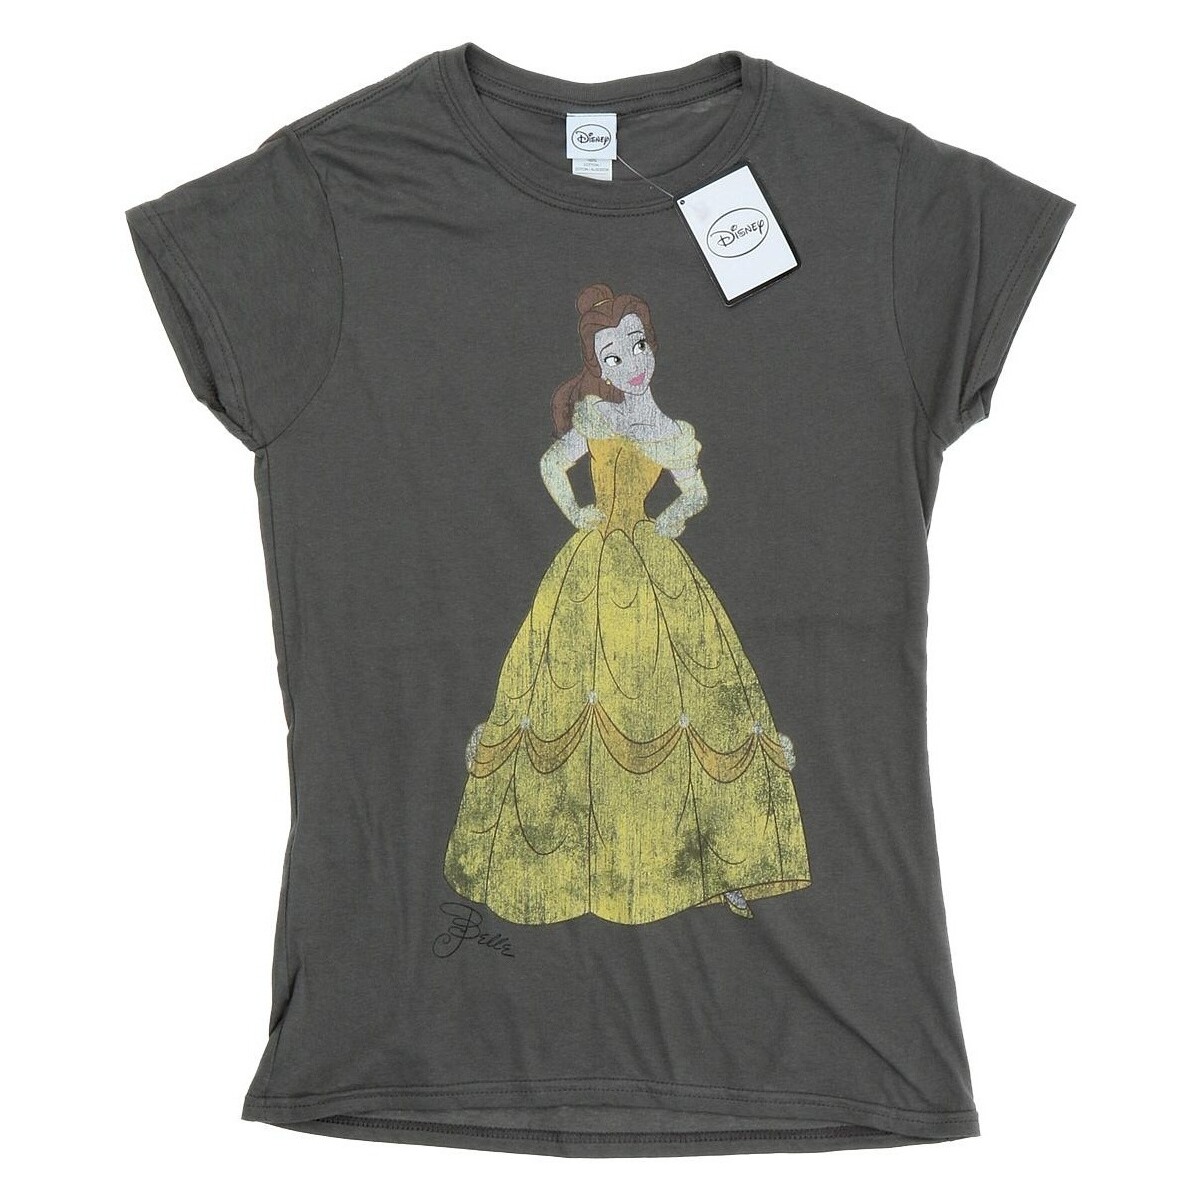 Vêtements Femme T-shirts manches longues Disney Classic Belle Multicolore